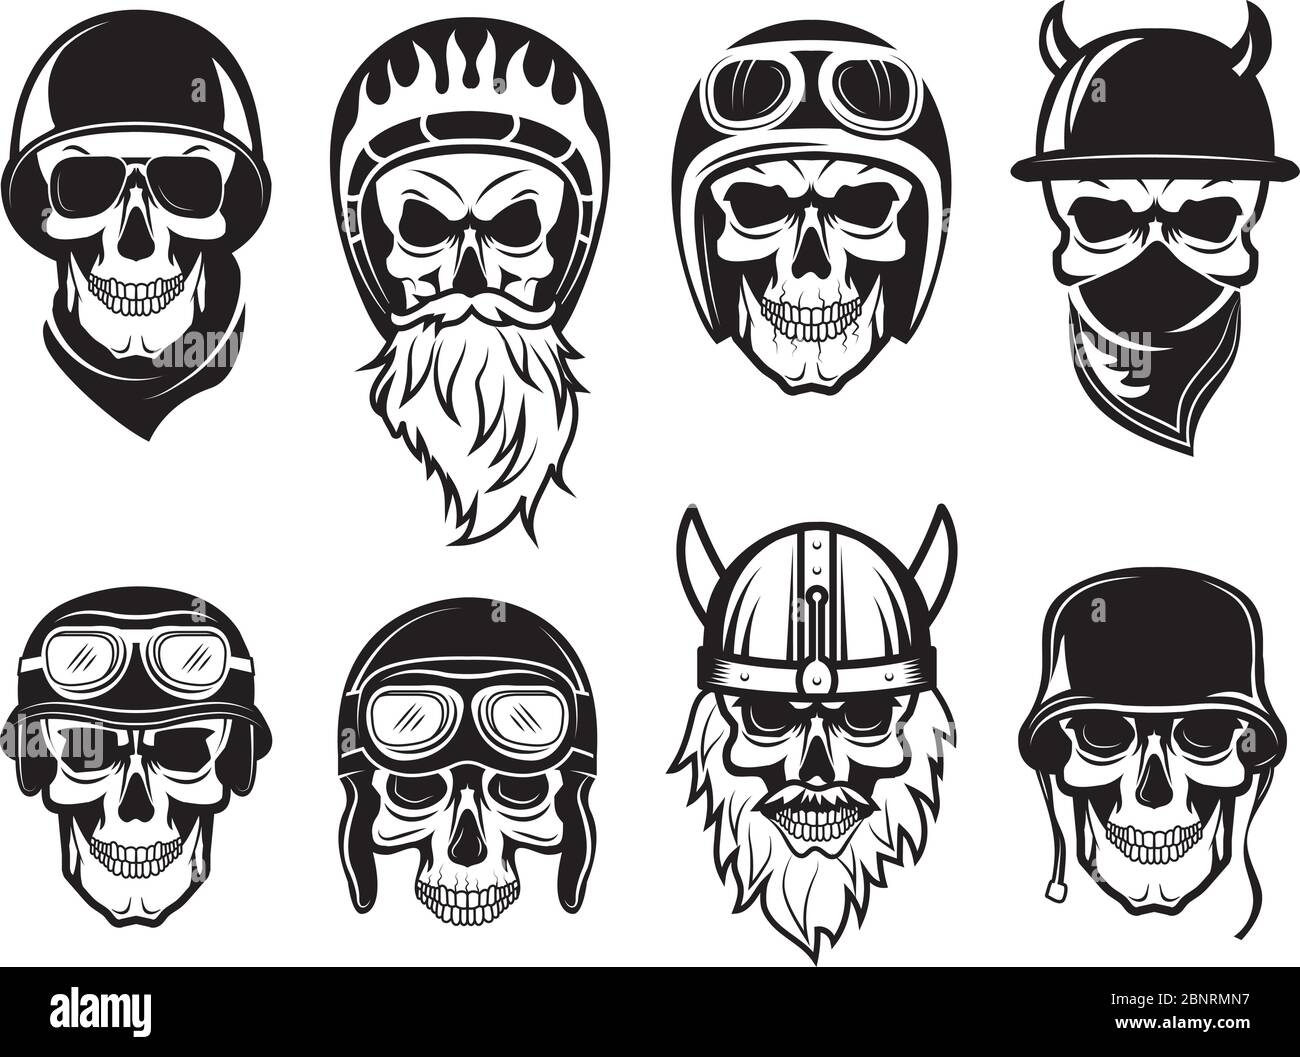 Skull bandana helmet. Bikers rock symbols tattoo vector black pictures  Stock Vector Image & Art - Alamy